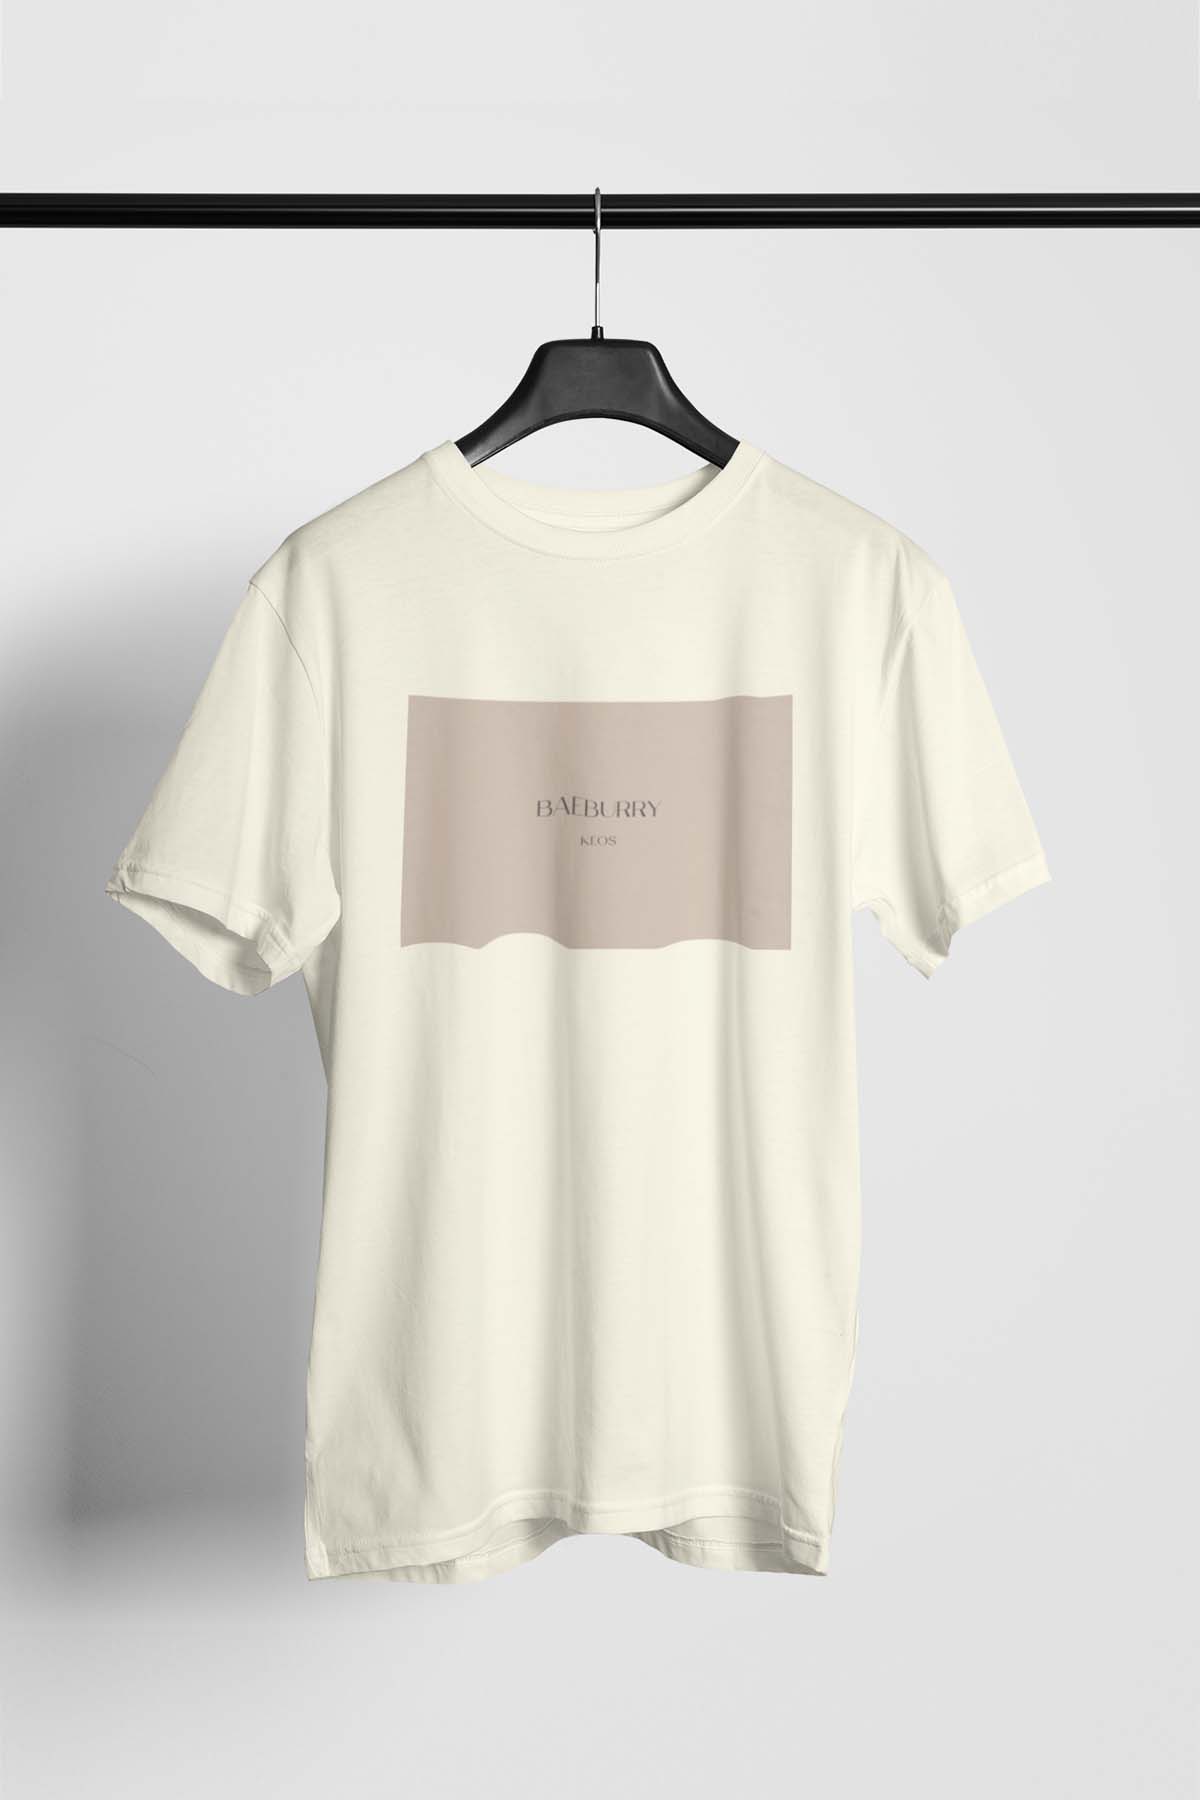 Baeburry Keos Organic Cotton T-shirt - keos.life